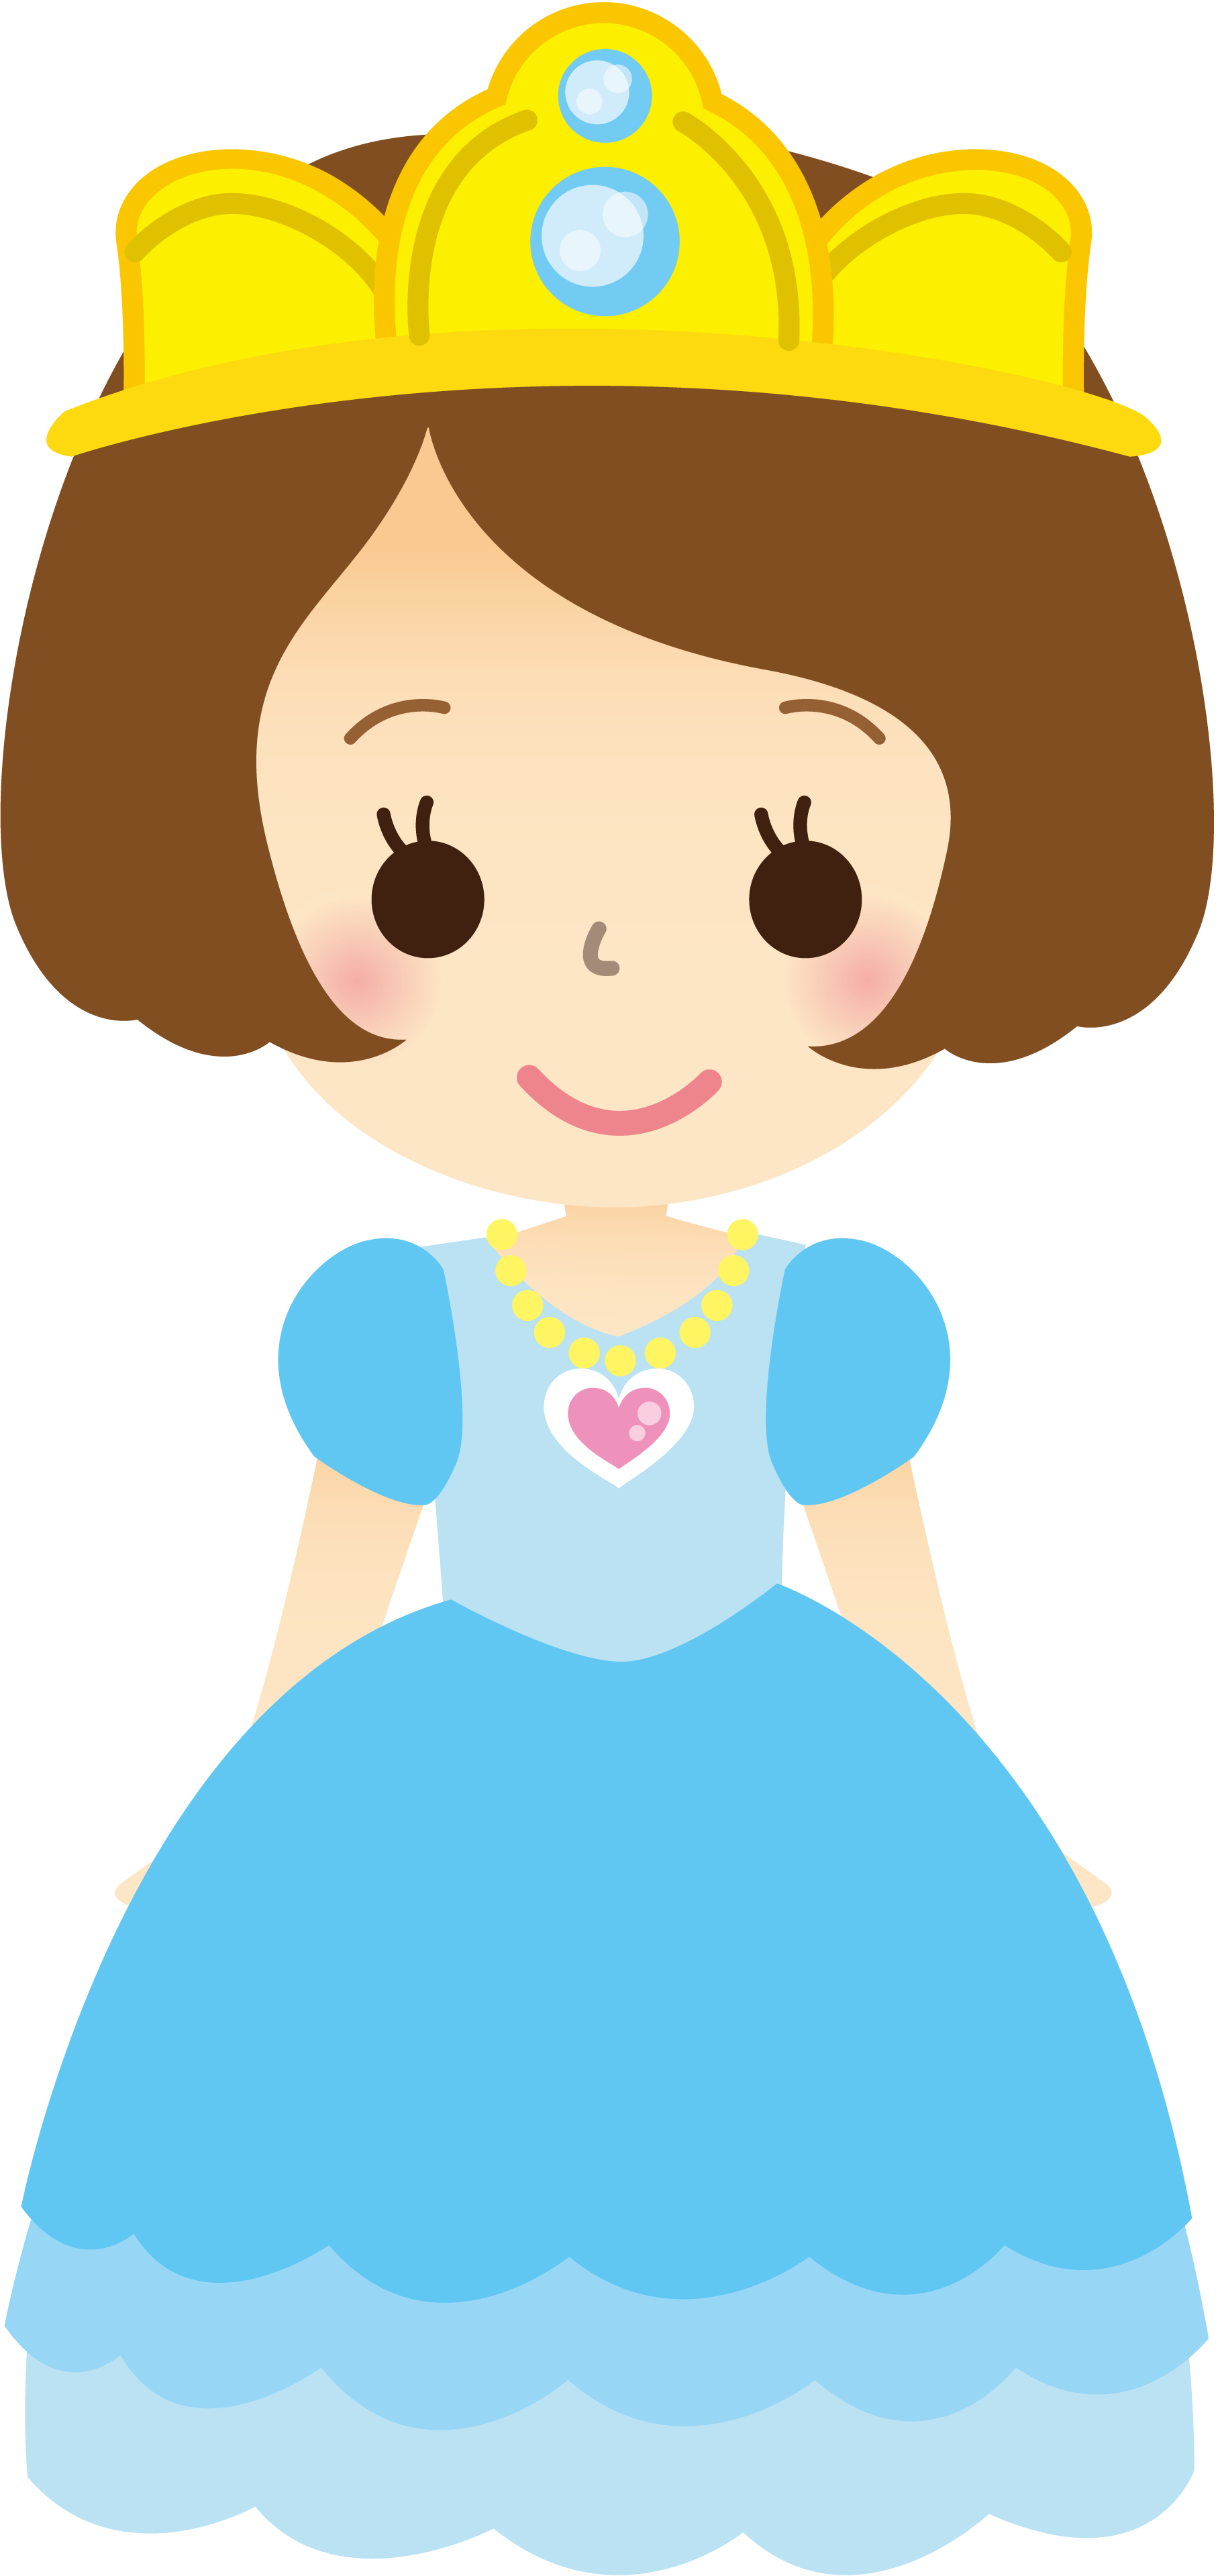 蓝色礼服的公主插图0